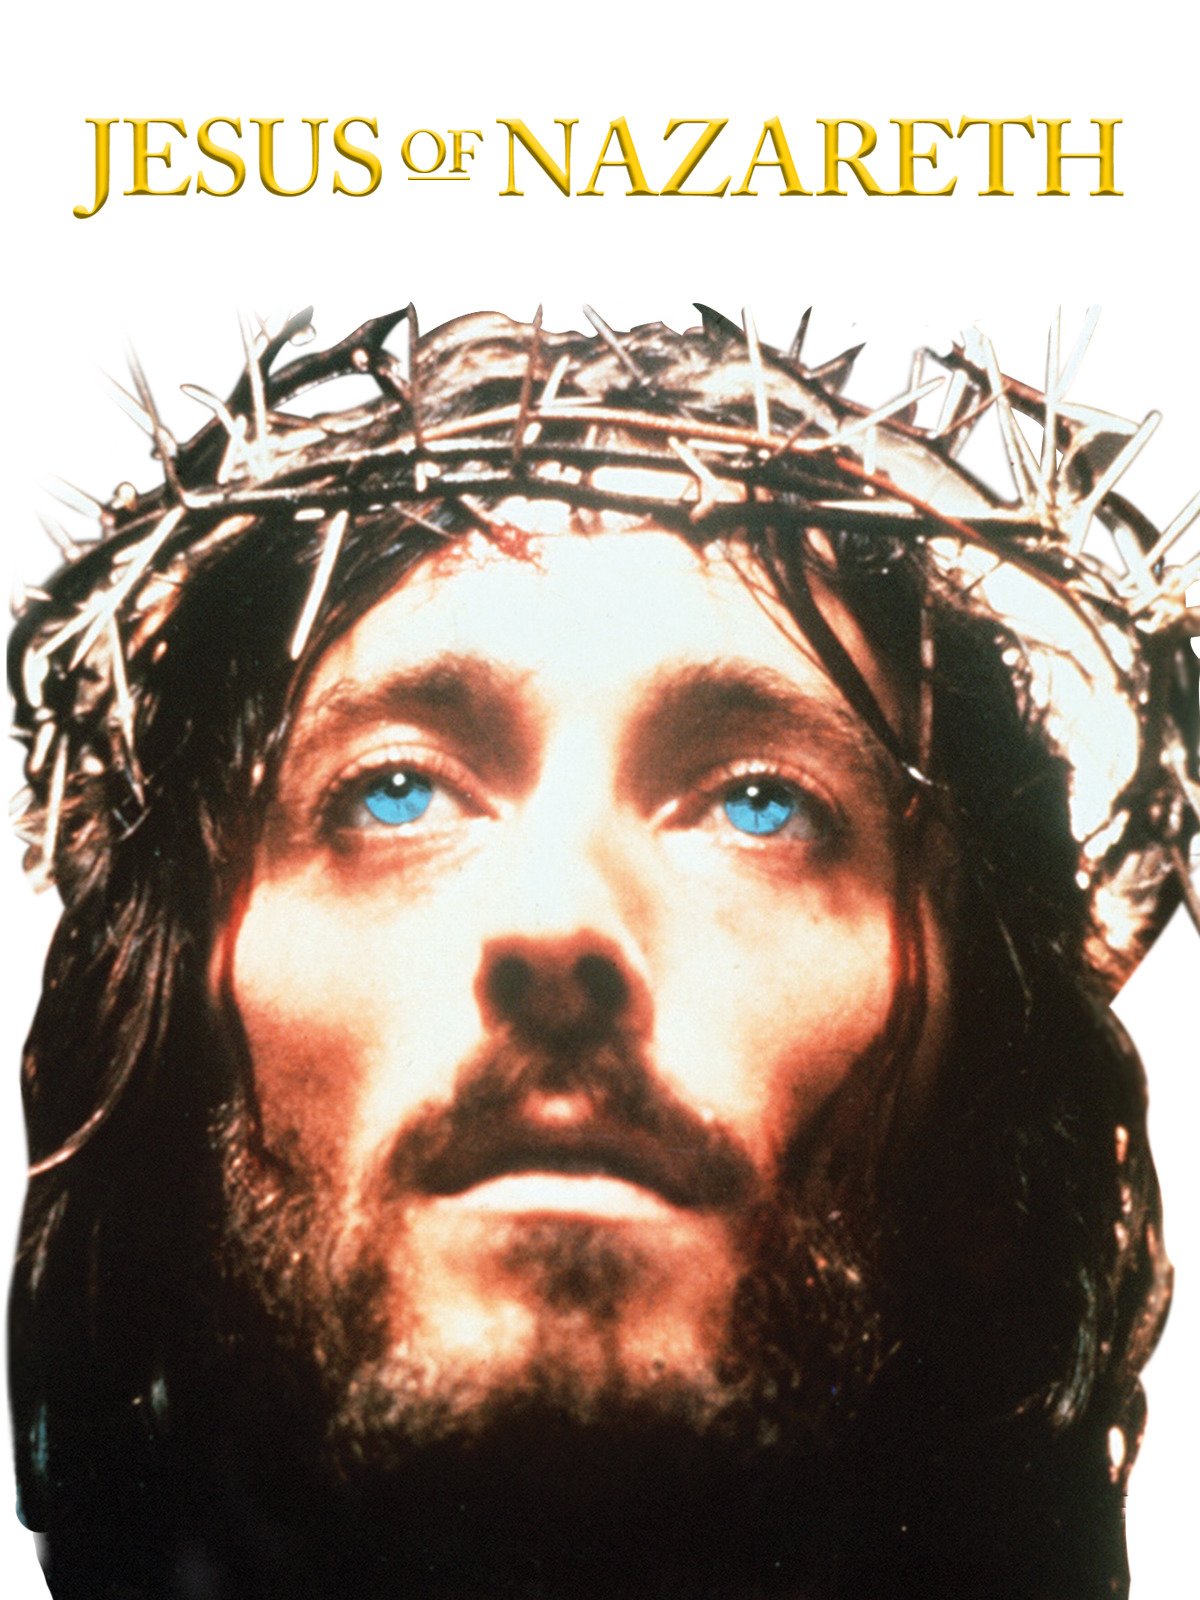 مشاهدة مسلسل Jesus of Nazareth الحلقة 4 الرابعة والاخيرة مترجمة